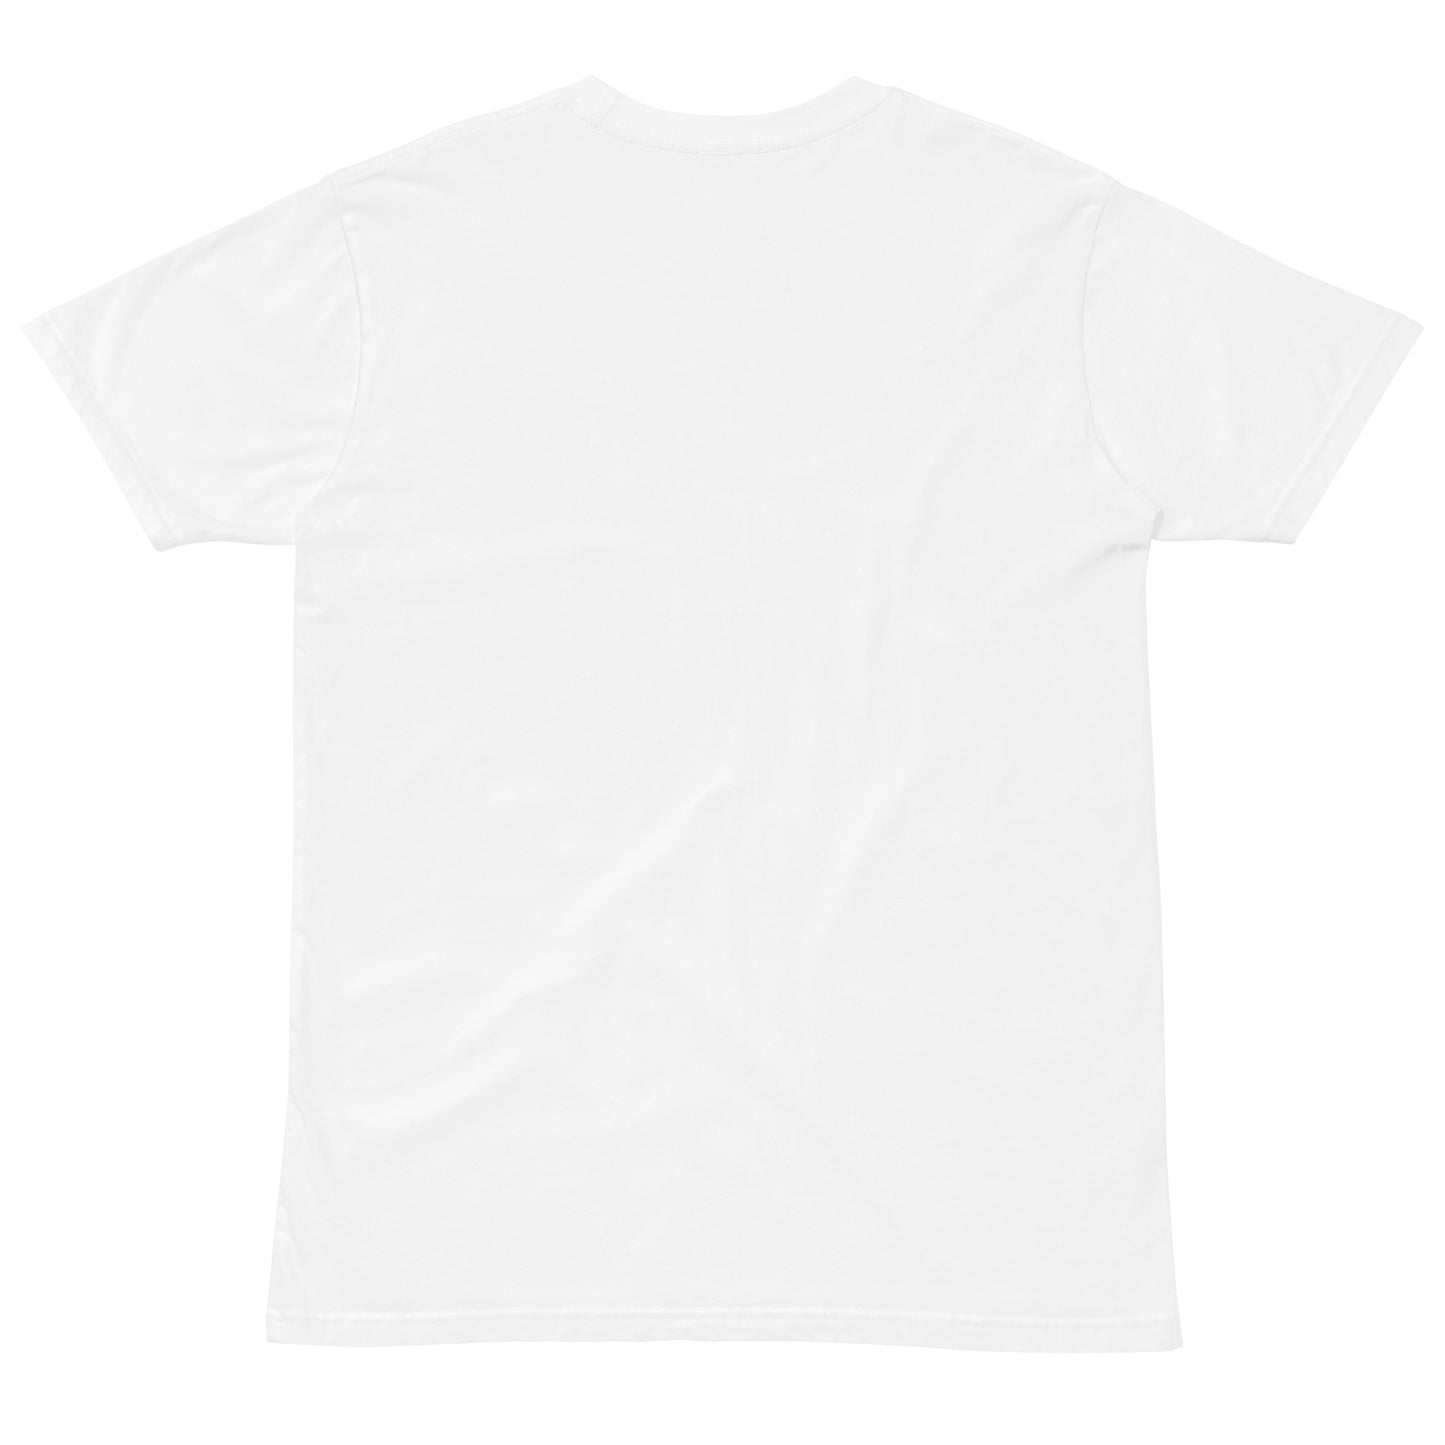 Unisex premium t-shirt - Surf